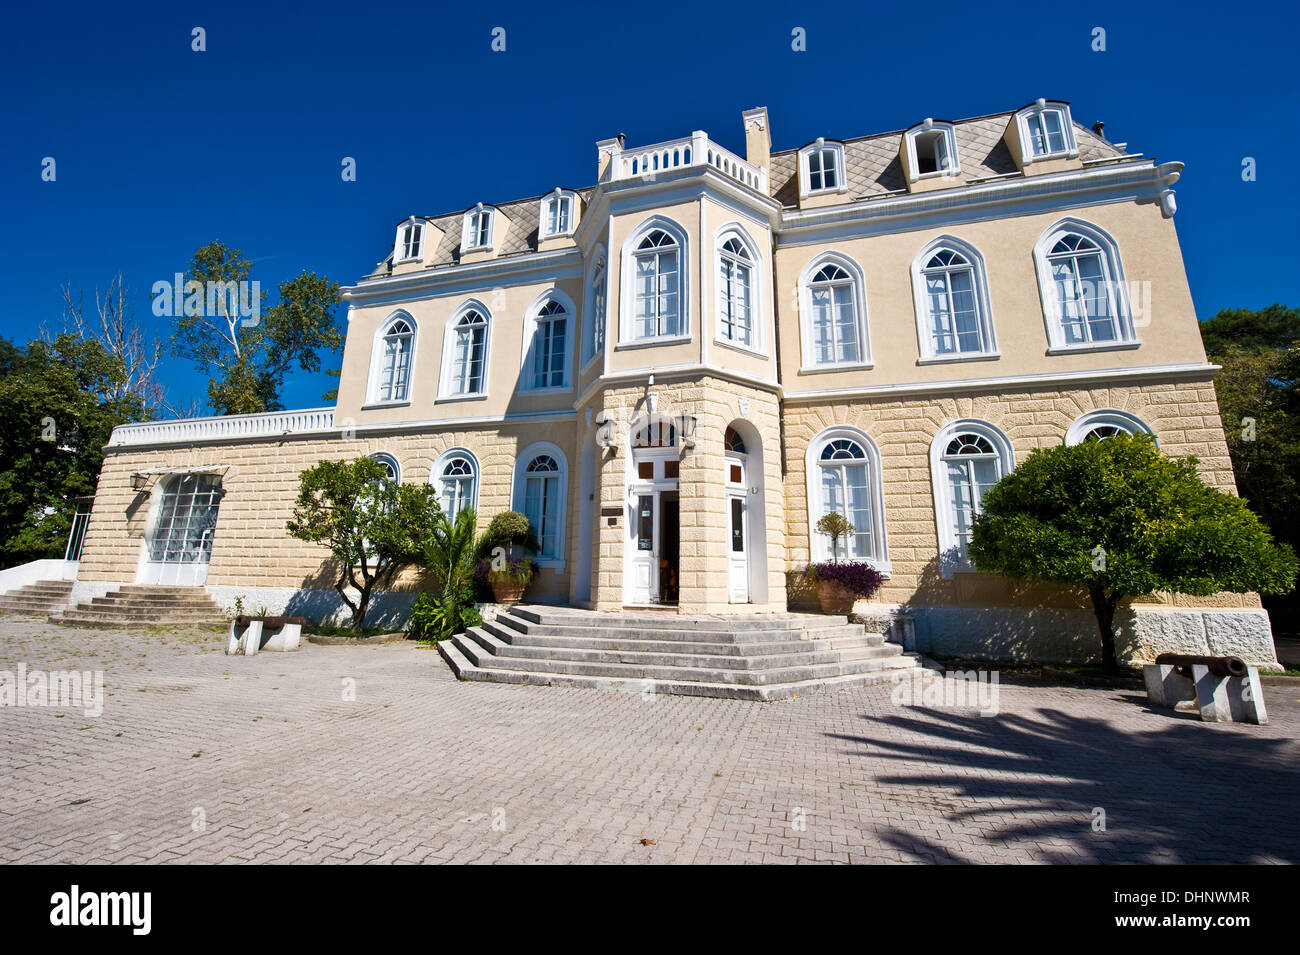 Musée de patrie dans la King's palace de Nicola Bar City, Crna Gora, Monténégro Banque D'Images